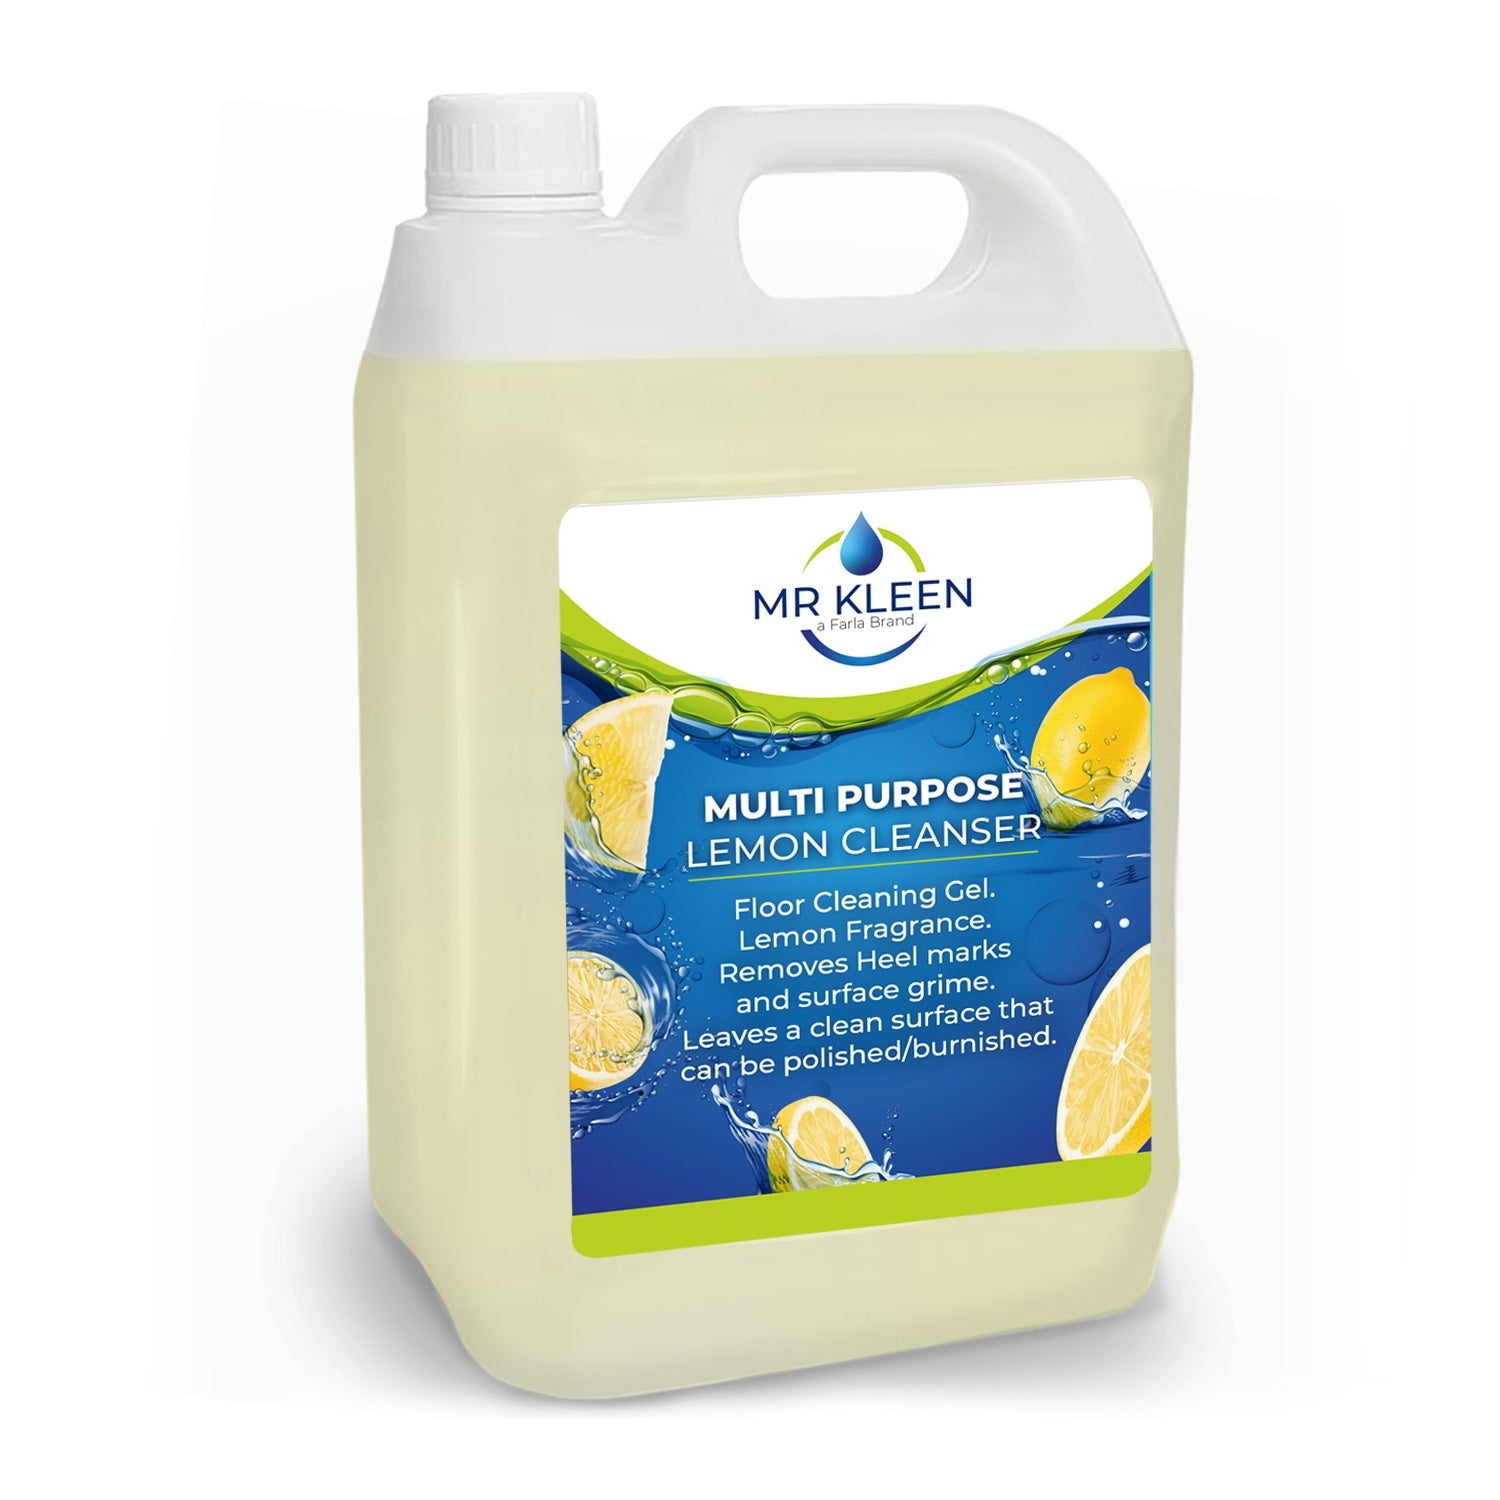 Mr Kleen Multi Purpose Lemon Cleanser | 5L